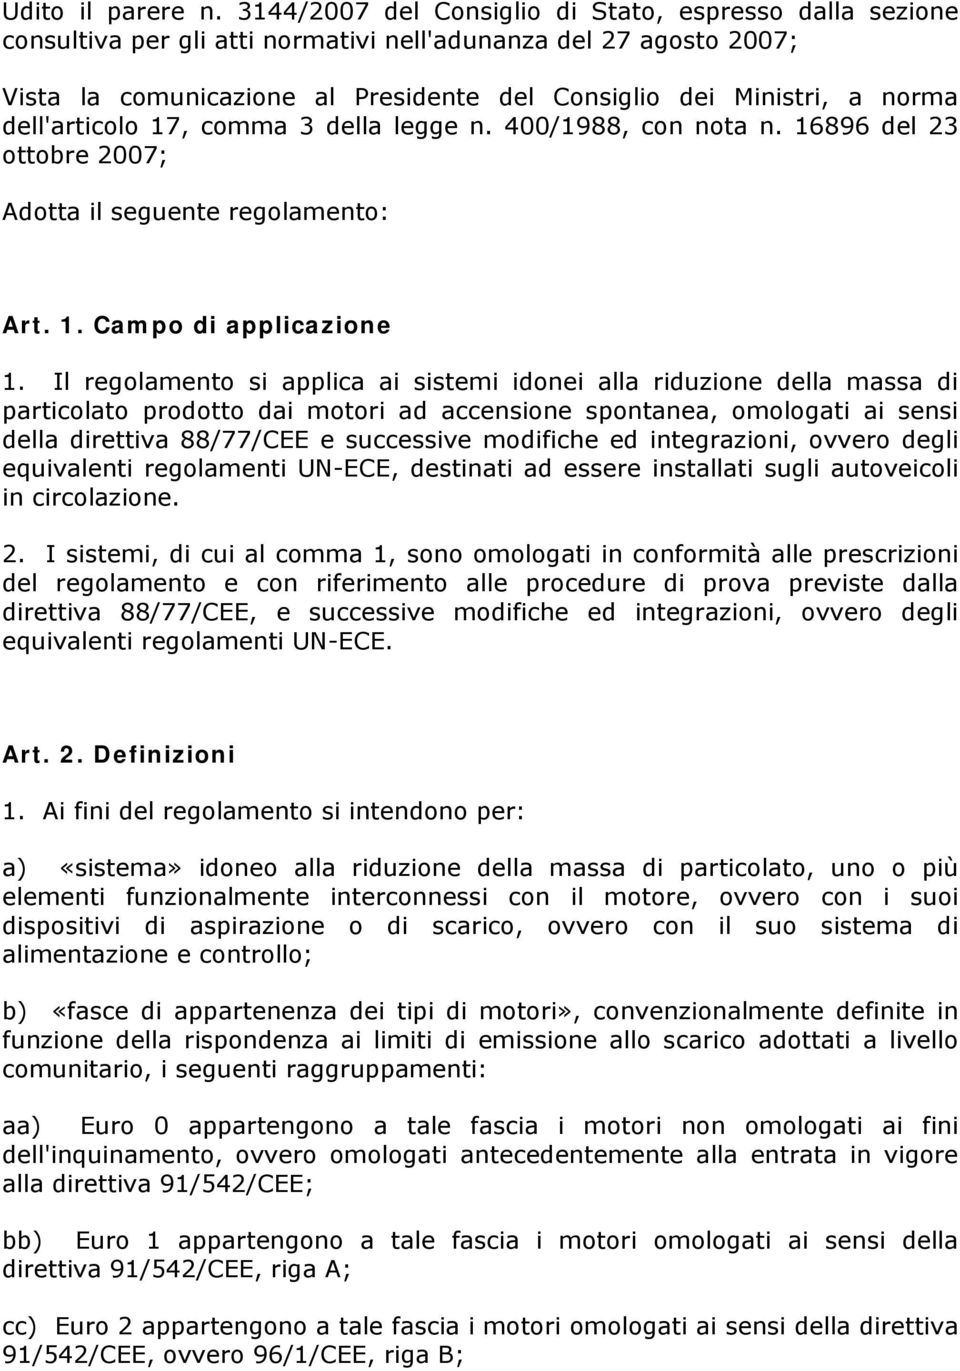 dell'articolo 17, comma 3 della legge n. 400/1988, con nota n. 16896 del 23 ottobre 2007; Adotta il seguente regolamento: Art. 1. Campo di applicazione 1.